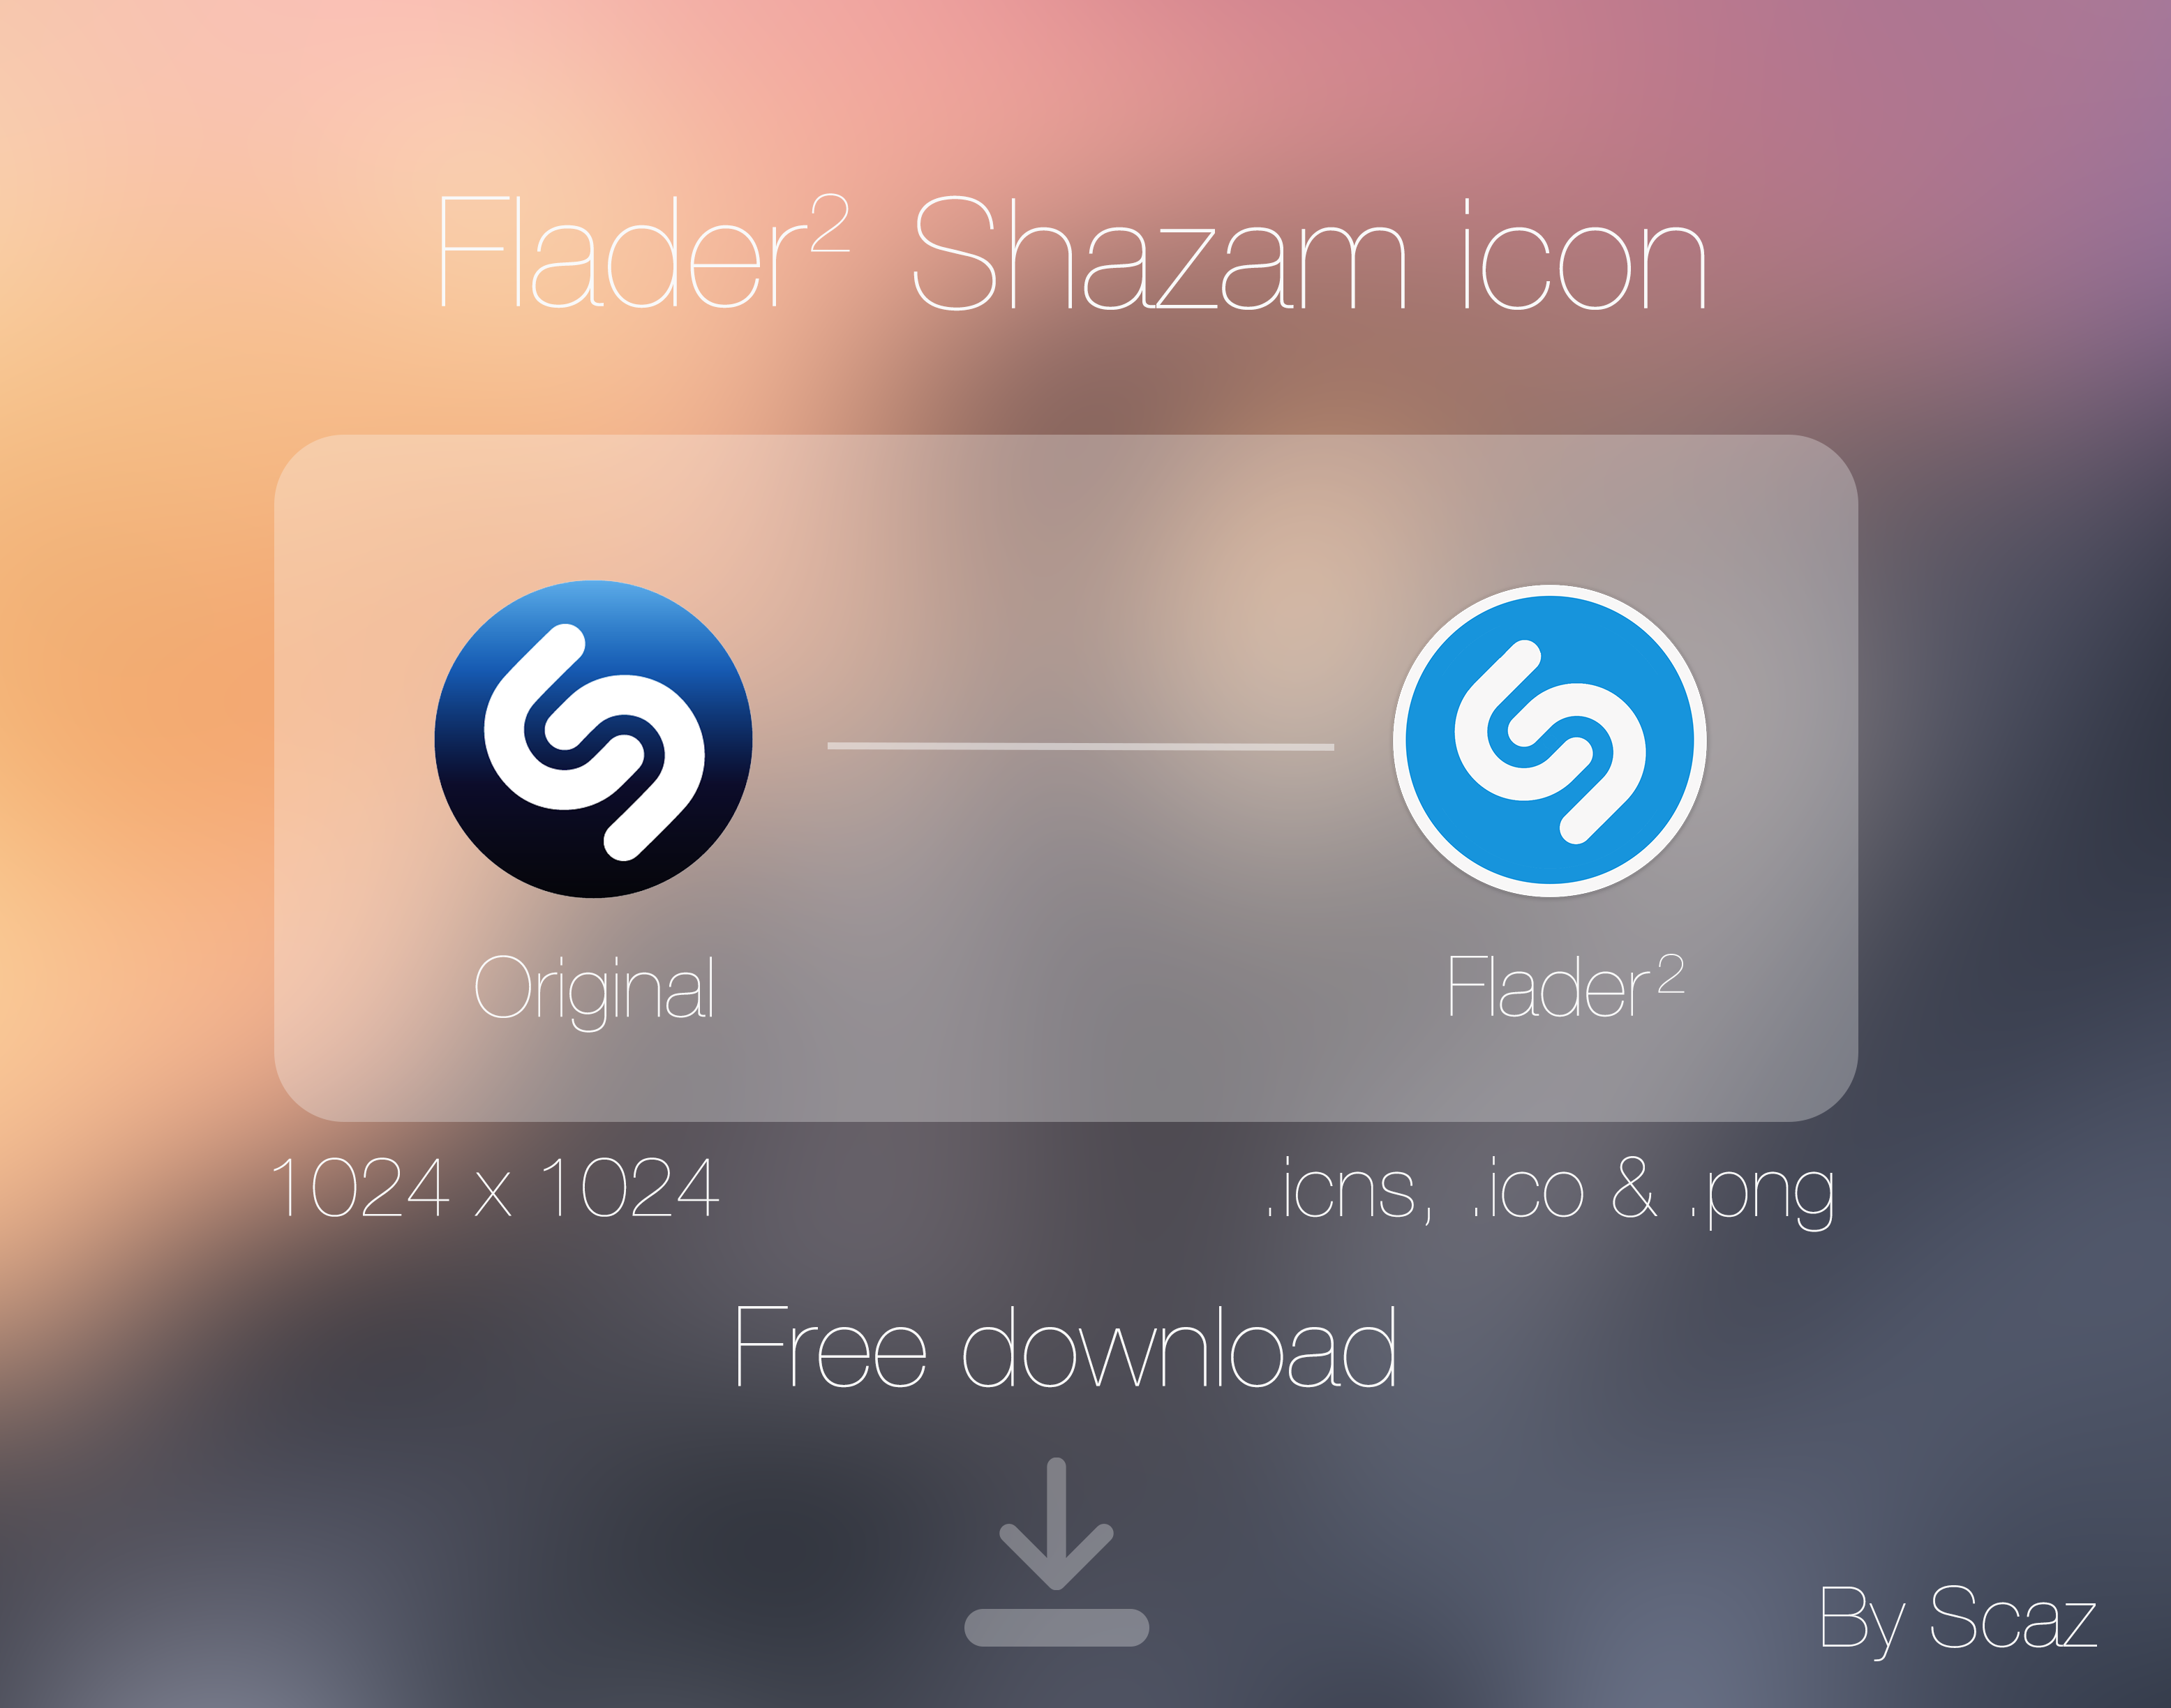 Flader 2 : Shazam icon App by scafer31000 on DeviantArt